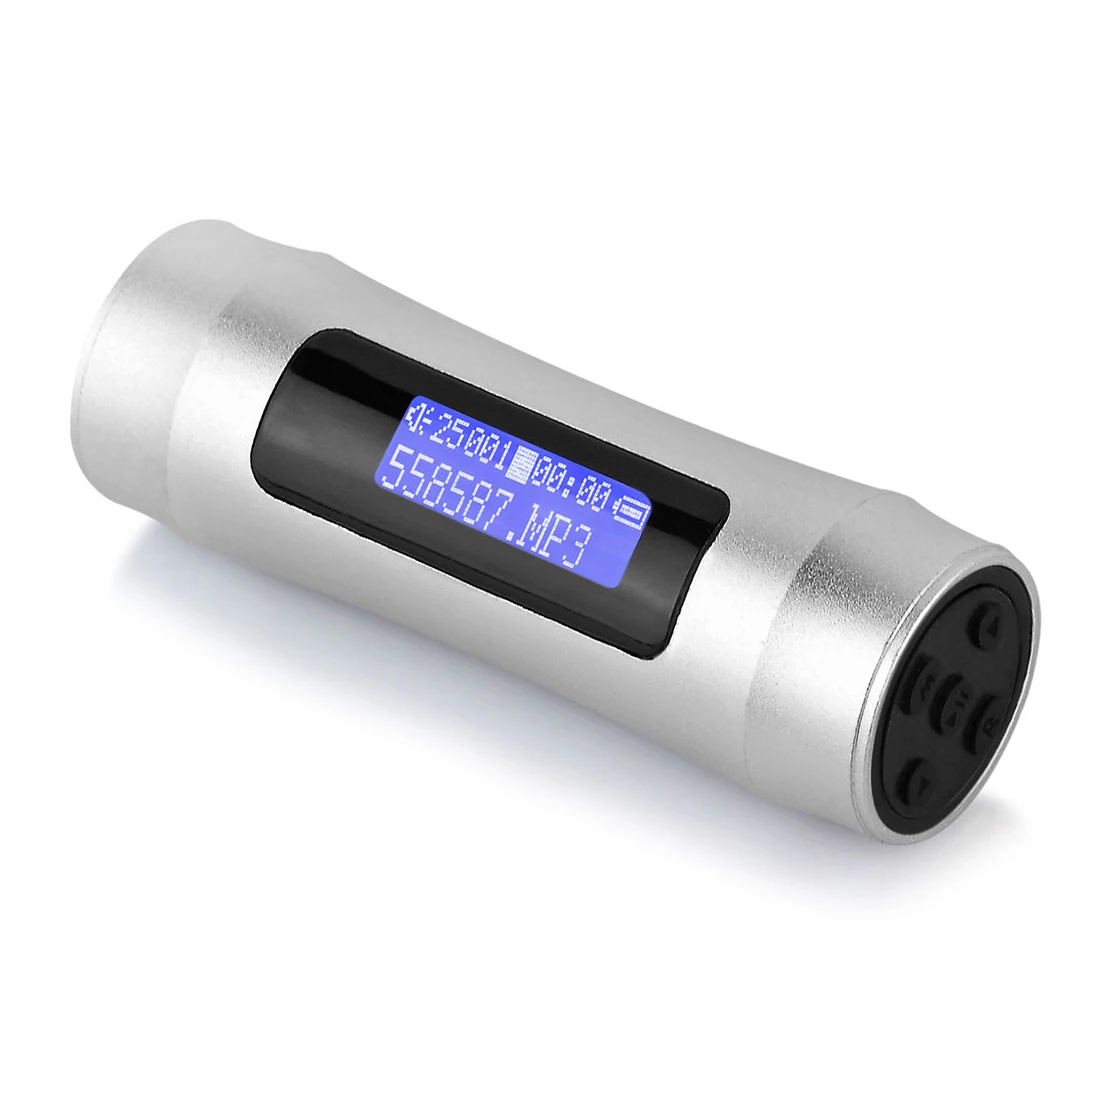 MAHA горячий водонепроницаемый цифровой подводный MP3 плеер FM lcd экран Спорт Серфинг Плавание 4GB серебряный